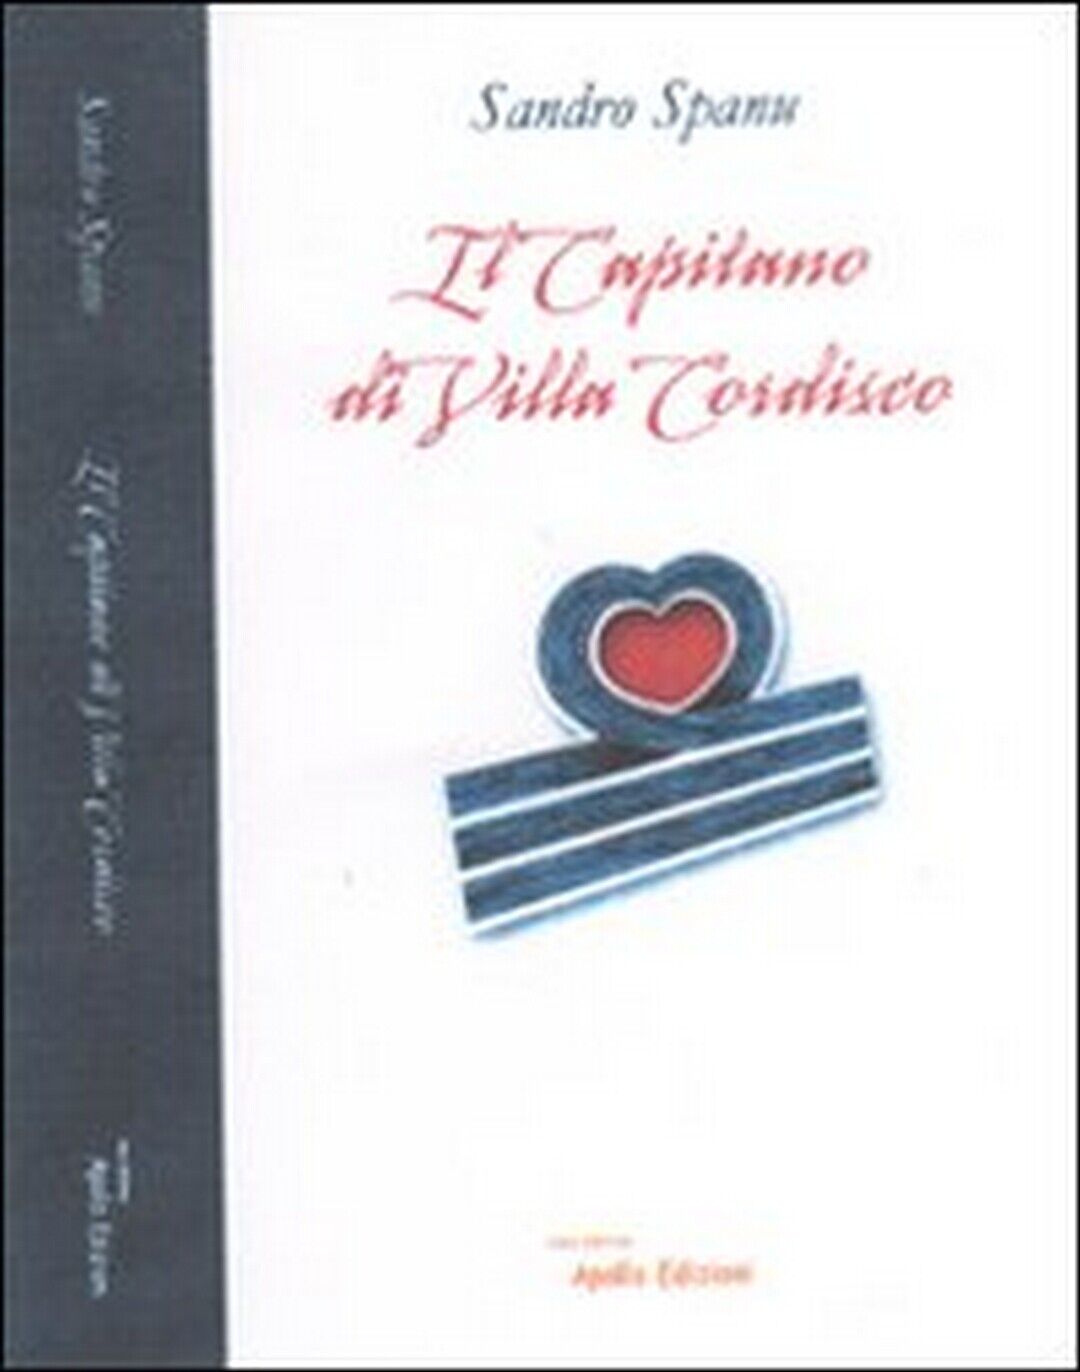 Il capitano di villa Cordisco  di Sandro Spanu,  2011,  Apollo Edizioni